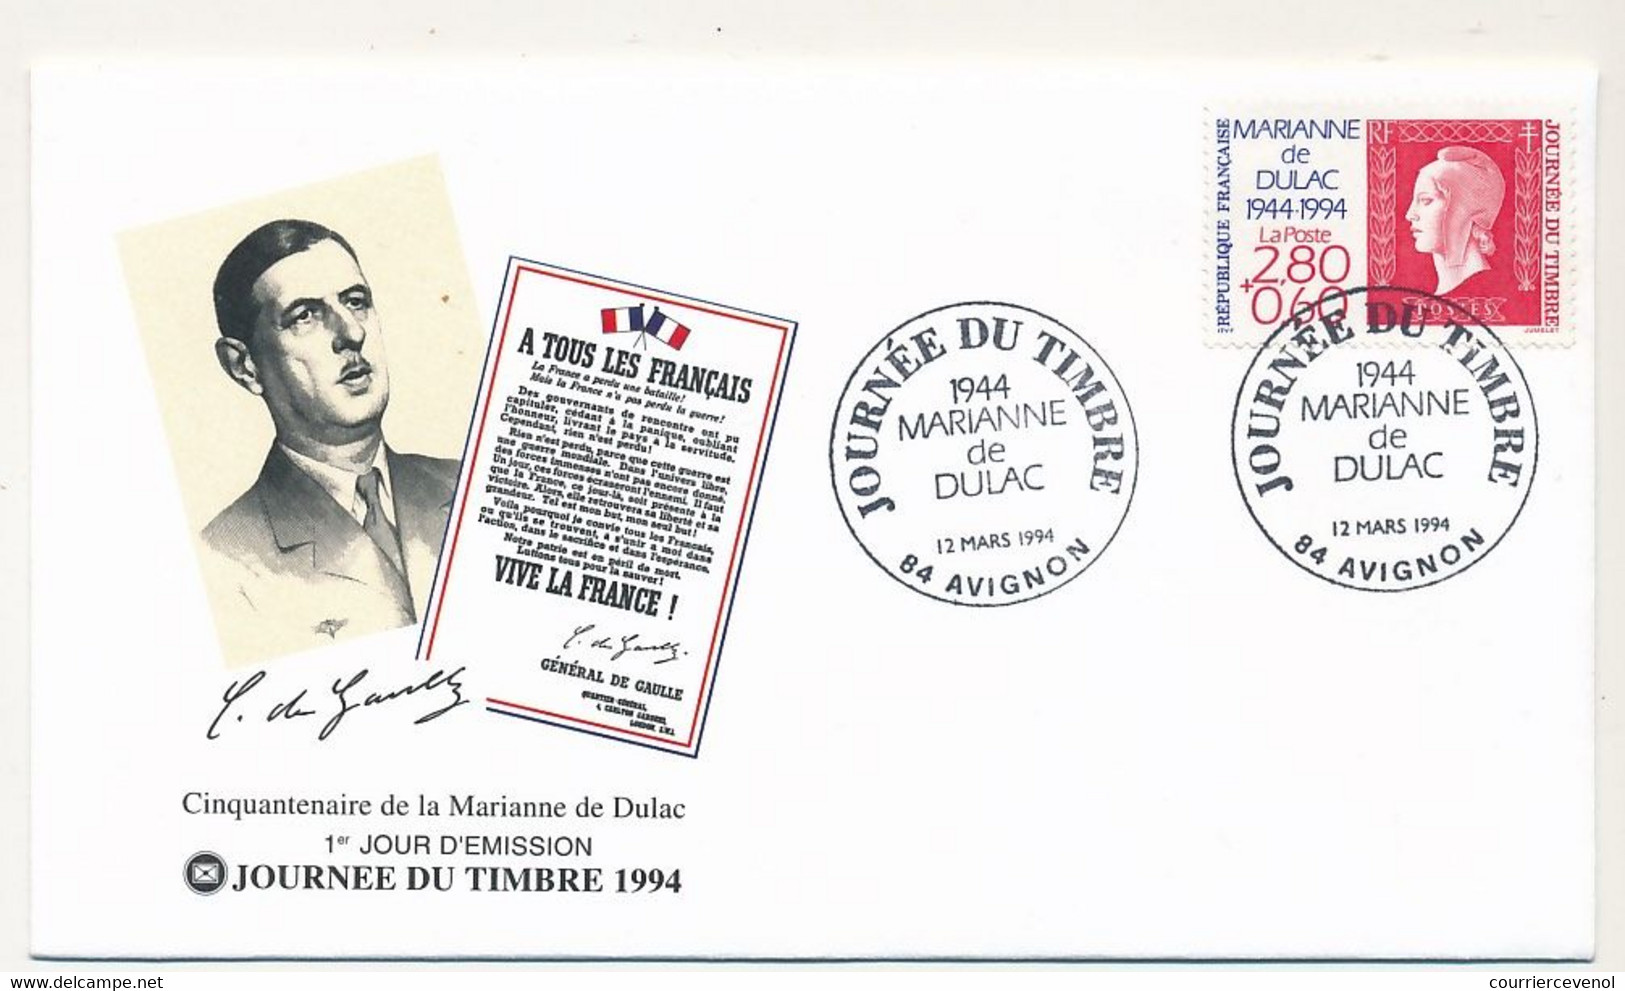 FRANCE - Enveloppe FDC Fédérale - Journée Du Timbre 1994 2,80 + 0,60 Marianne De Dulac - 12/3/1994 AVIGNON - Stamp's Day